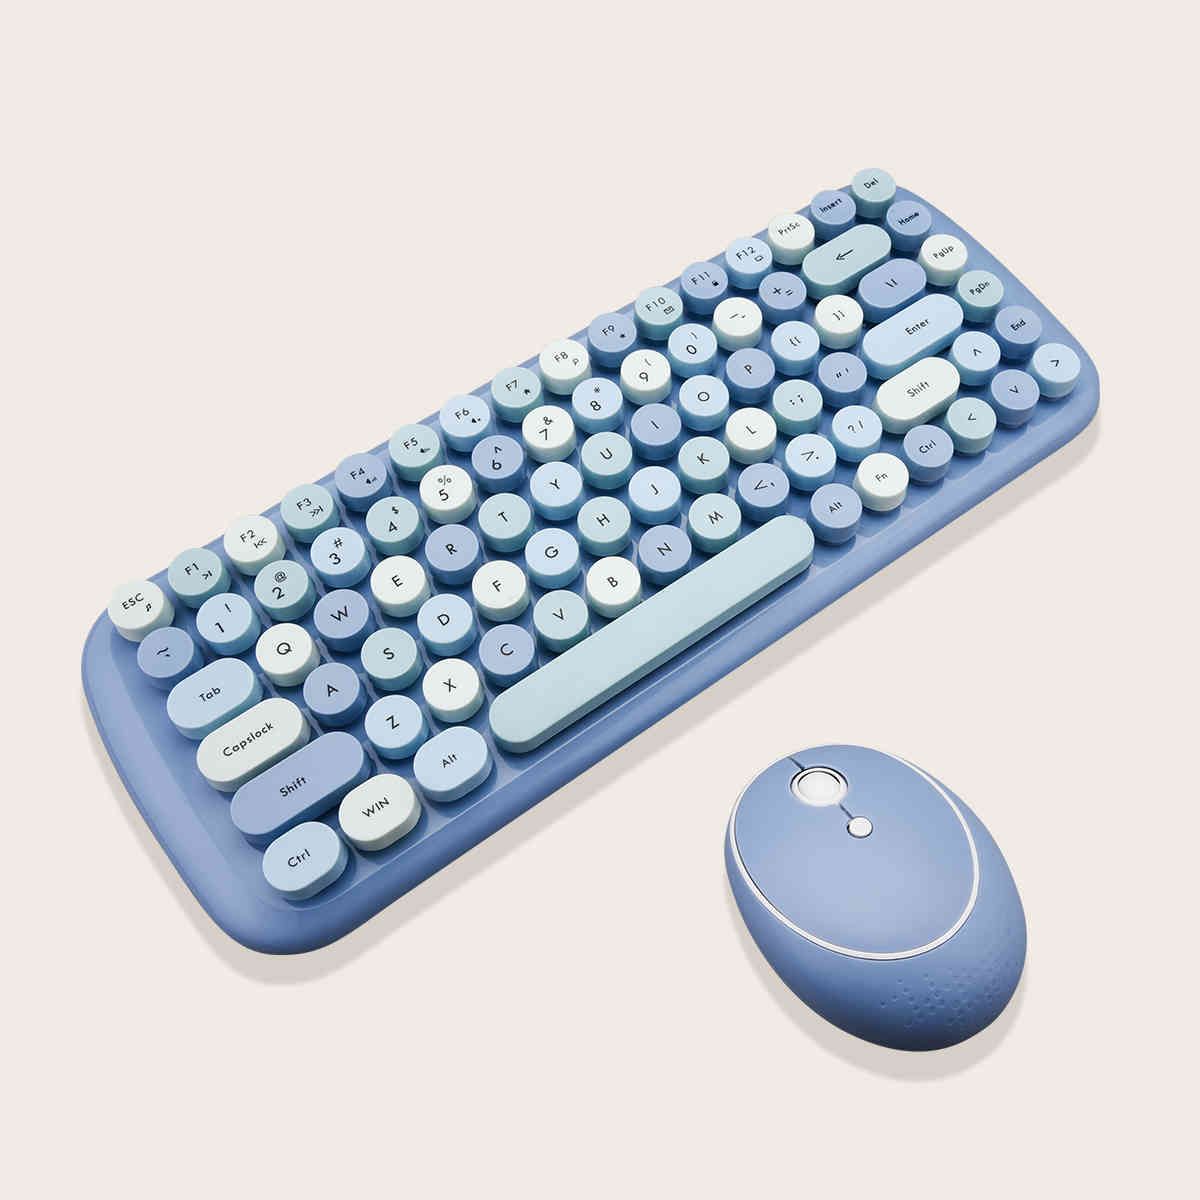 الأزرق مجموعة لوحة المفاتيح